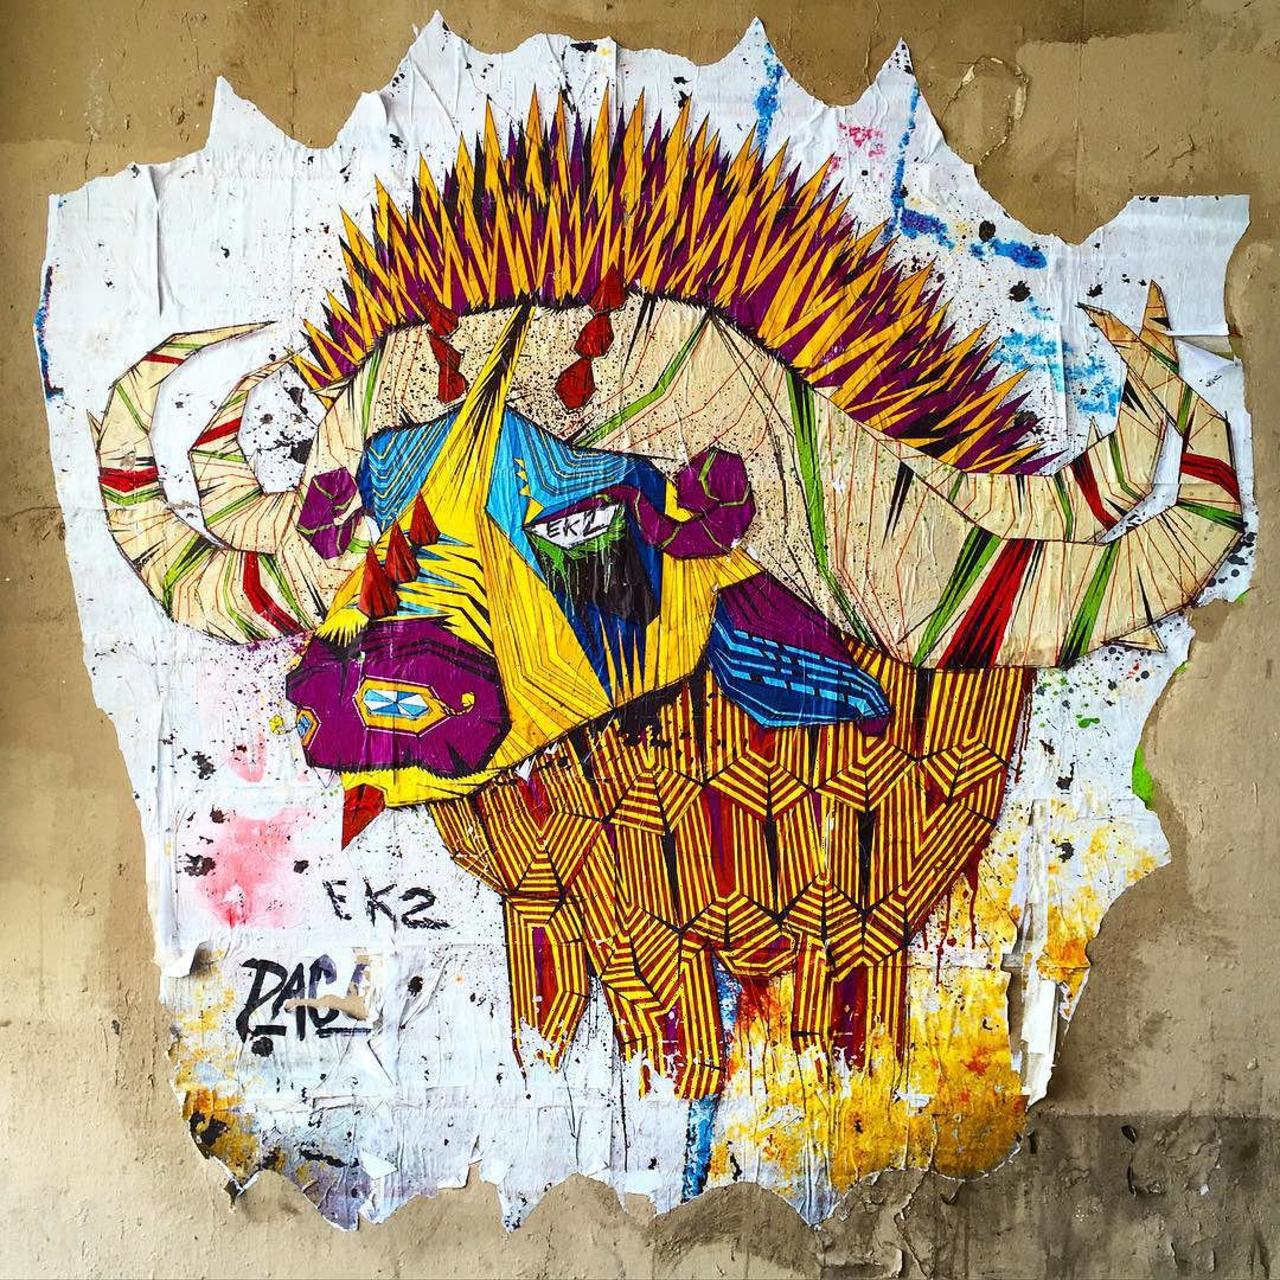 #Paris #graffiti photo by @jeanlucr http://ift.tt/1VIaa7L #StreetArt http://t.co/e8nnzdfLIE